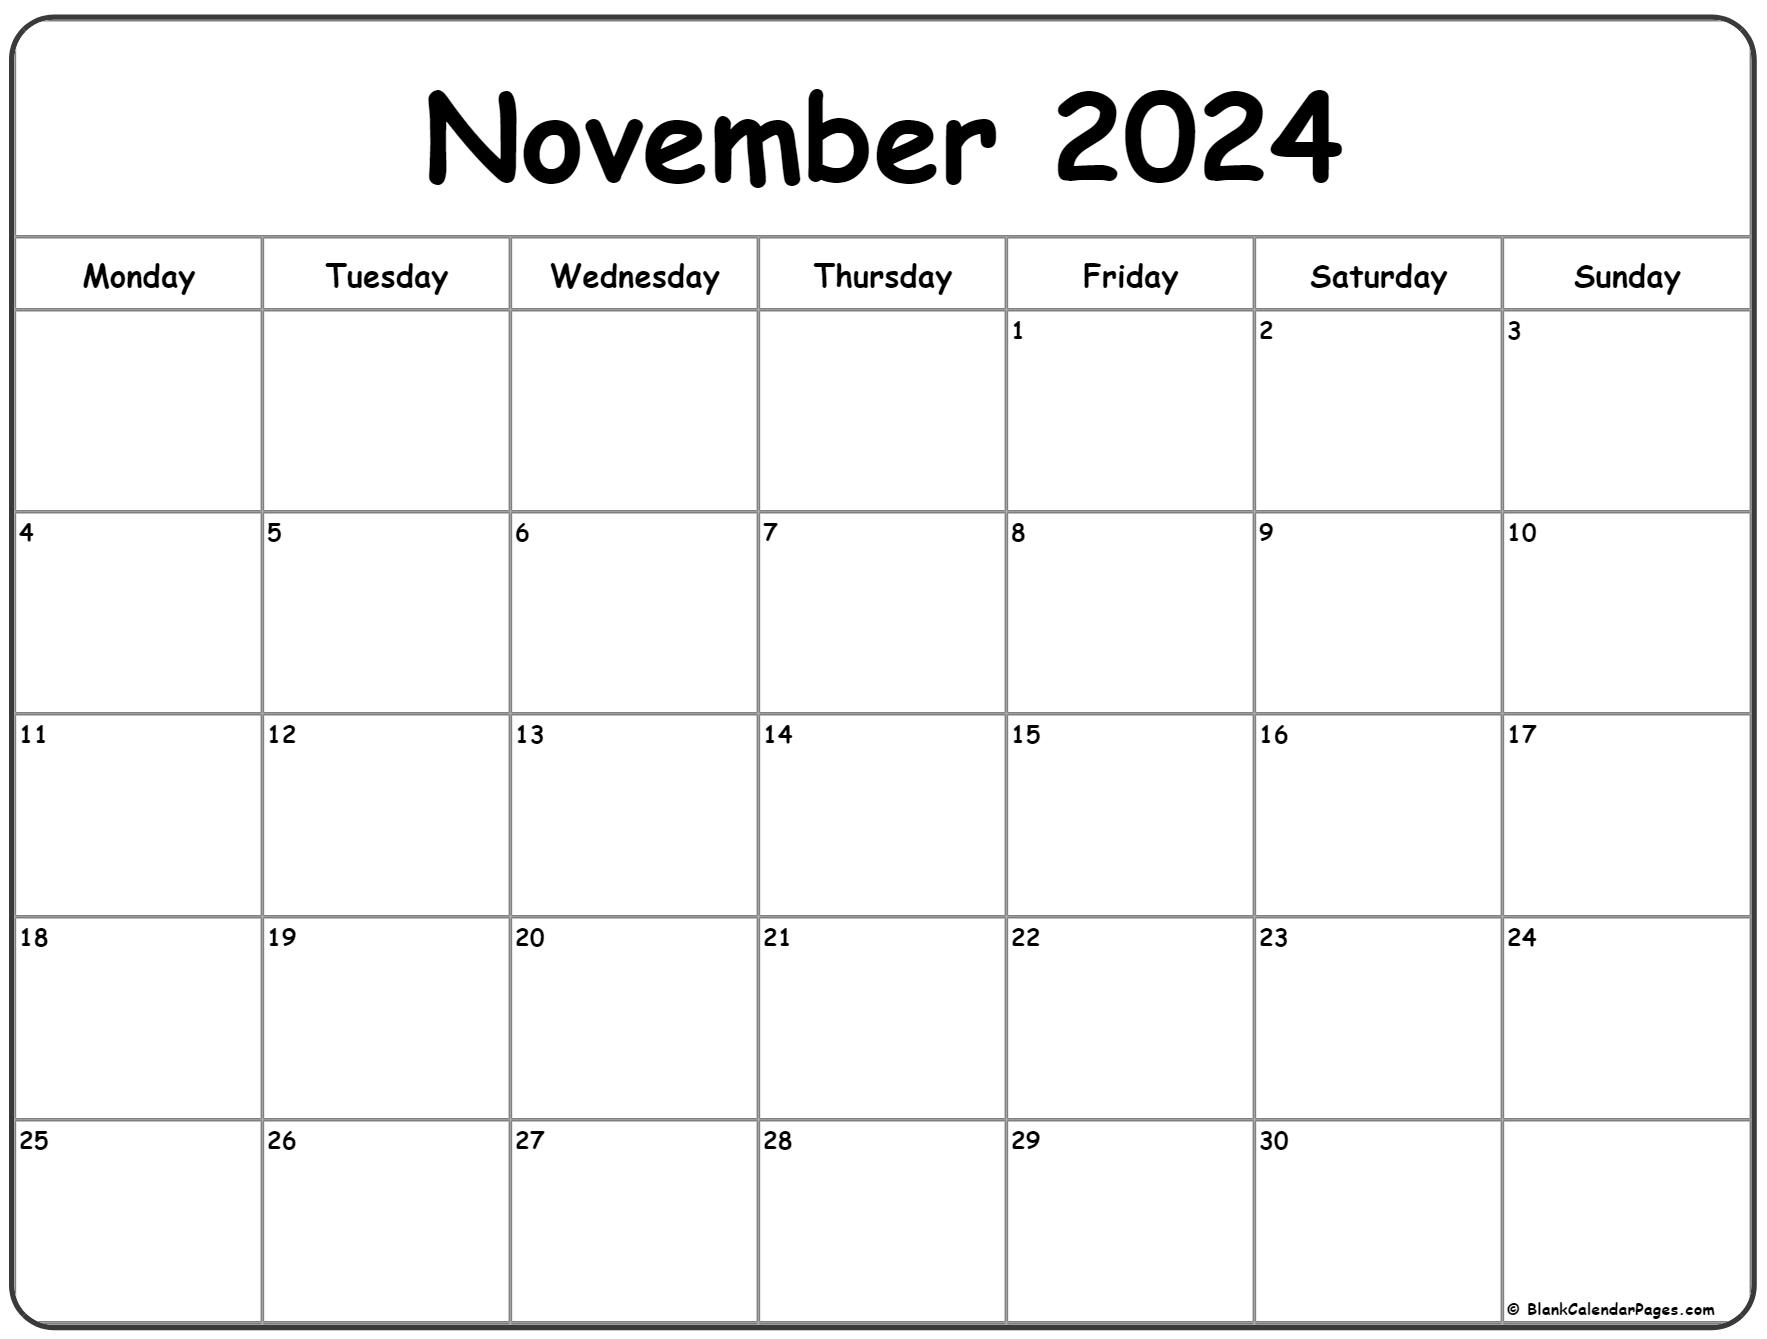 November 2024 Monday Calendar | Monday To Sunday for Printable November 2024 Calendar